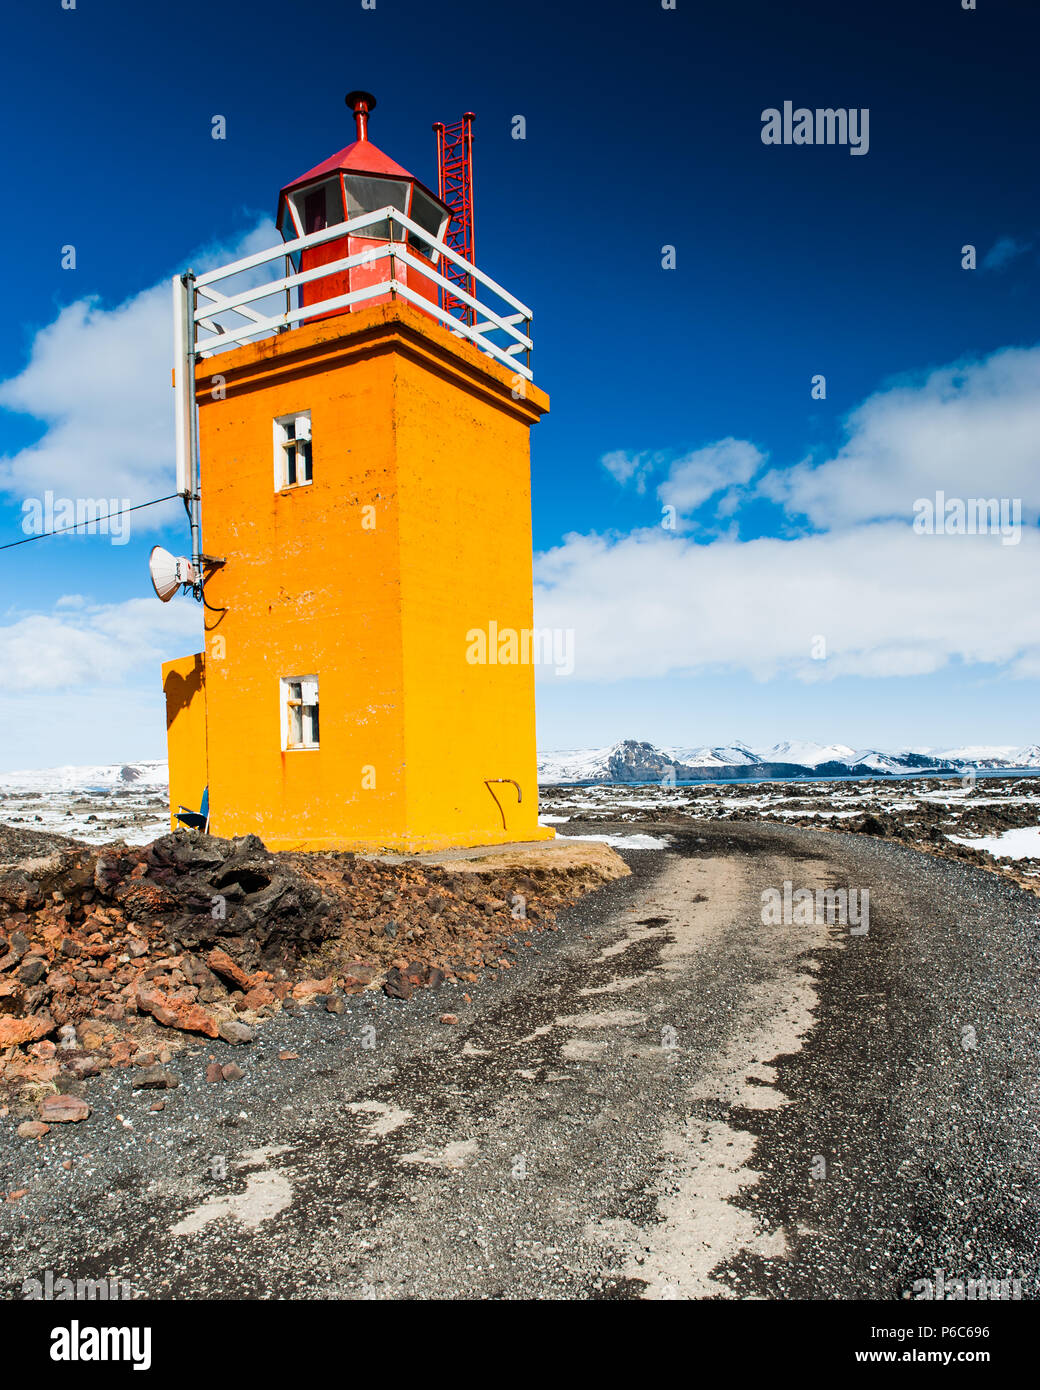 Célèbre phare orange frappante à Grindavik cimetière de navires couverts par un contraste élevé et des couleurs vivd à beau temps, l'islande avril 2018 Banque D'Images